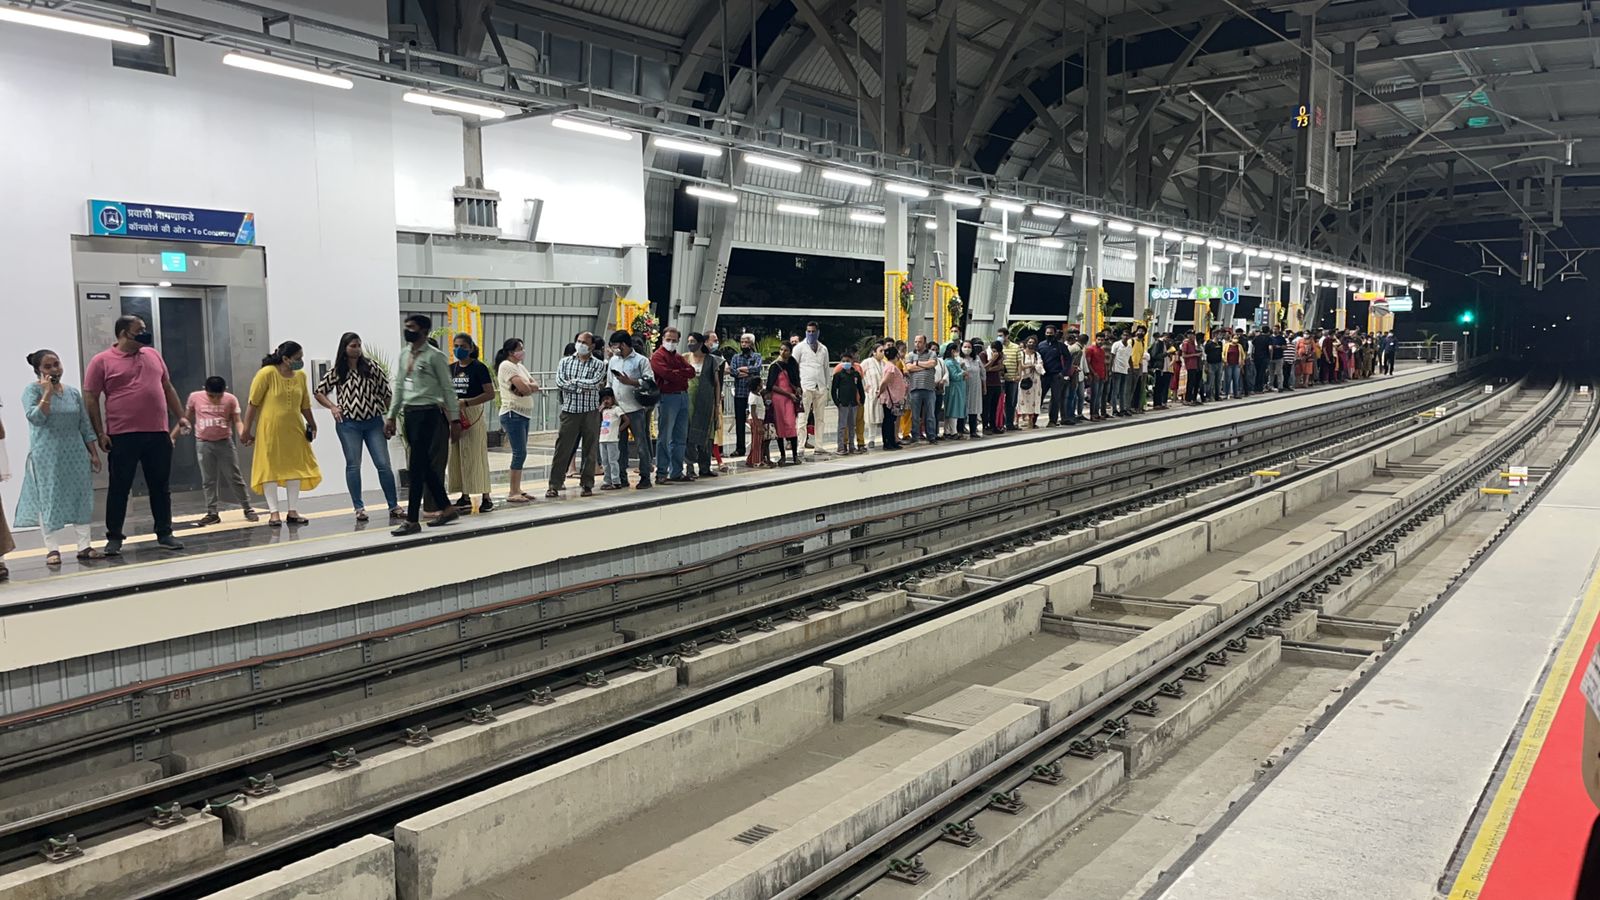 Pune Metro Timetable | धुलीवंदनाच्या दिवशी पुणे मेट्रोने प्रवास करणार असाल तर मेट्रोची बदललेली वेळ जाणून घ्या 